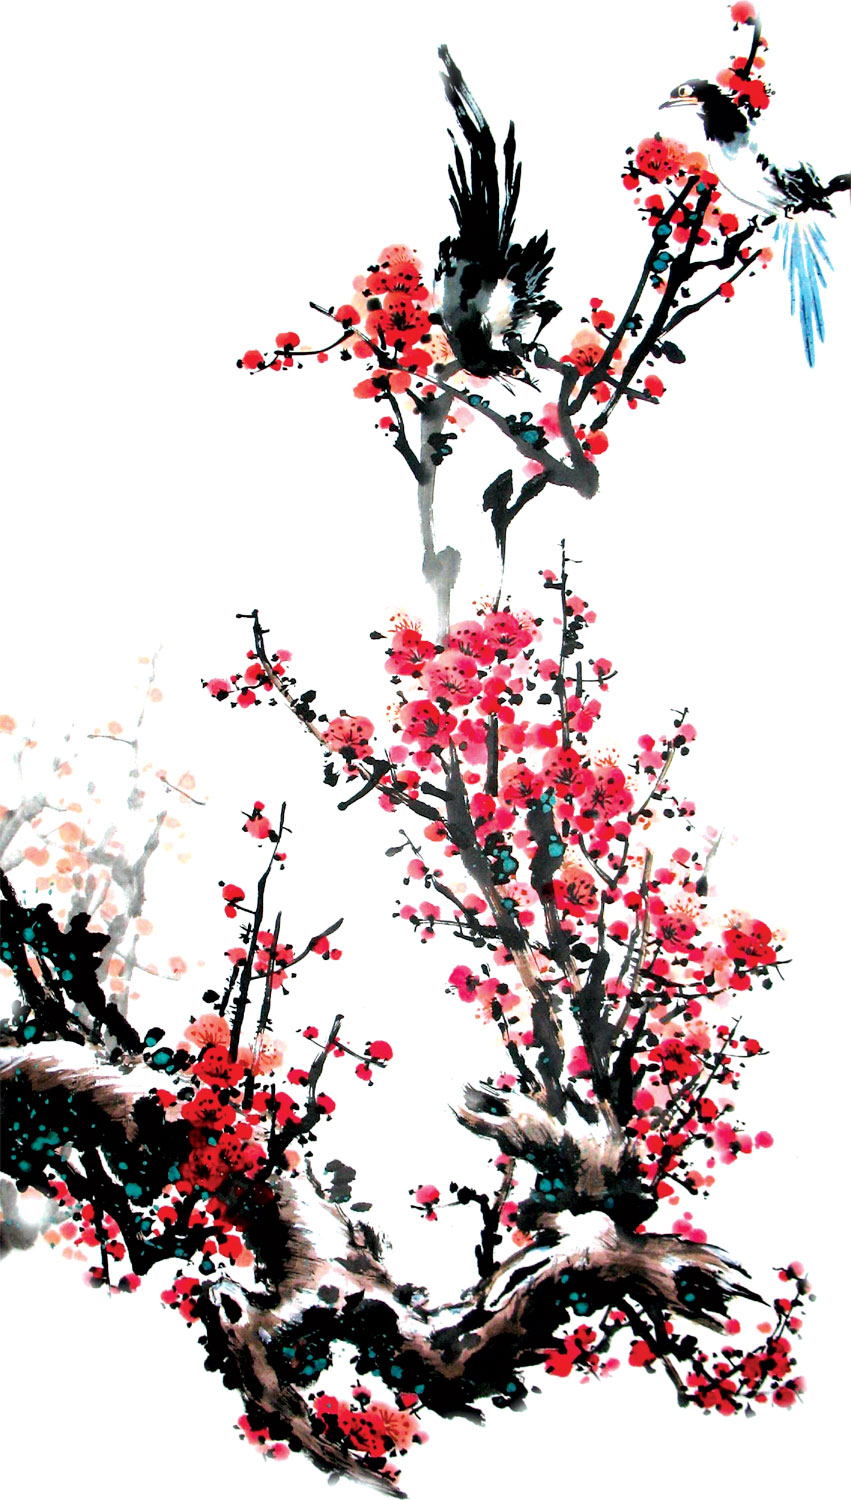 赤い花のイラスト フリー素材 No 674 水墨画風 梅の木